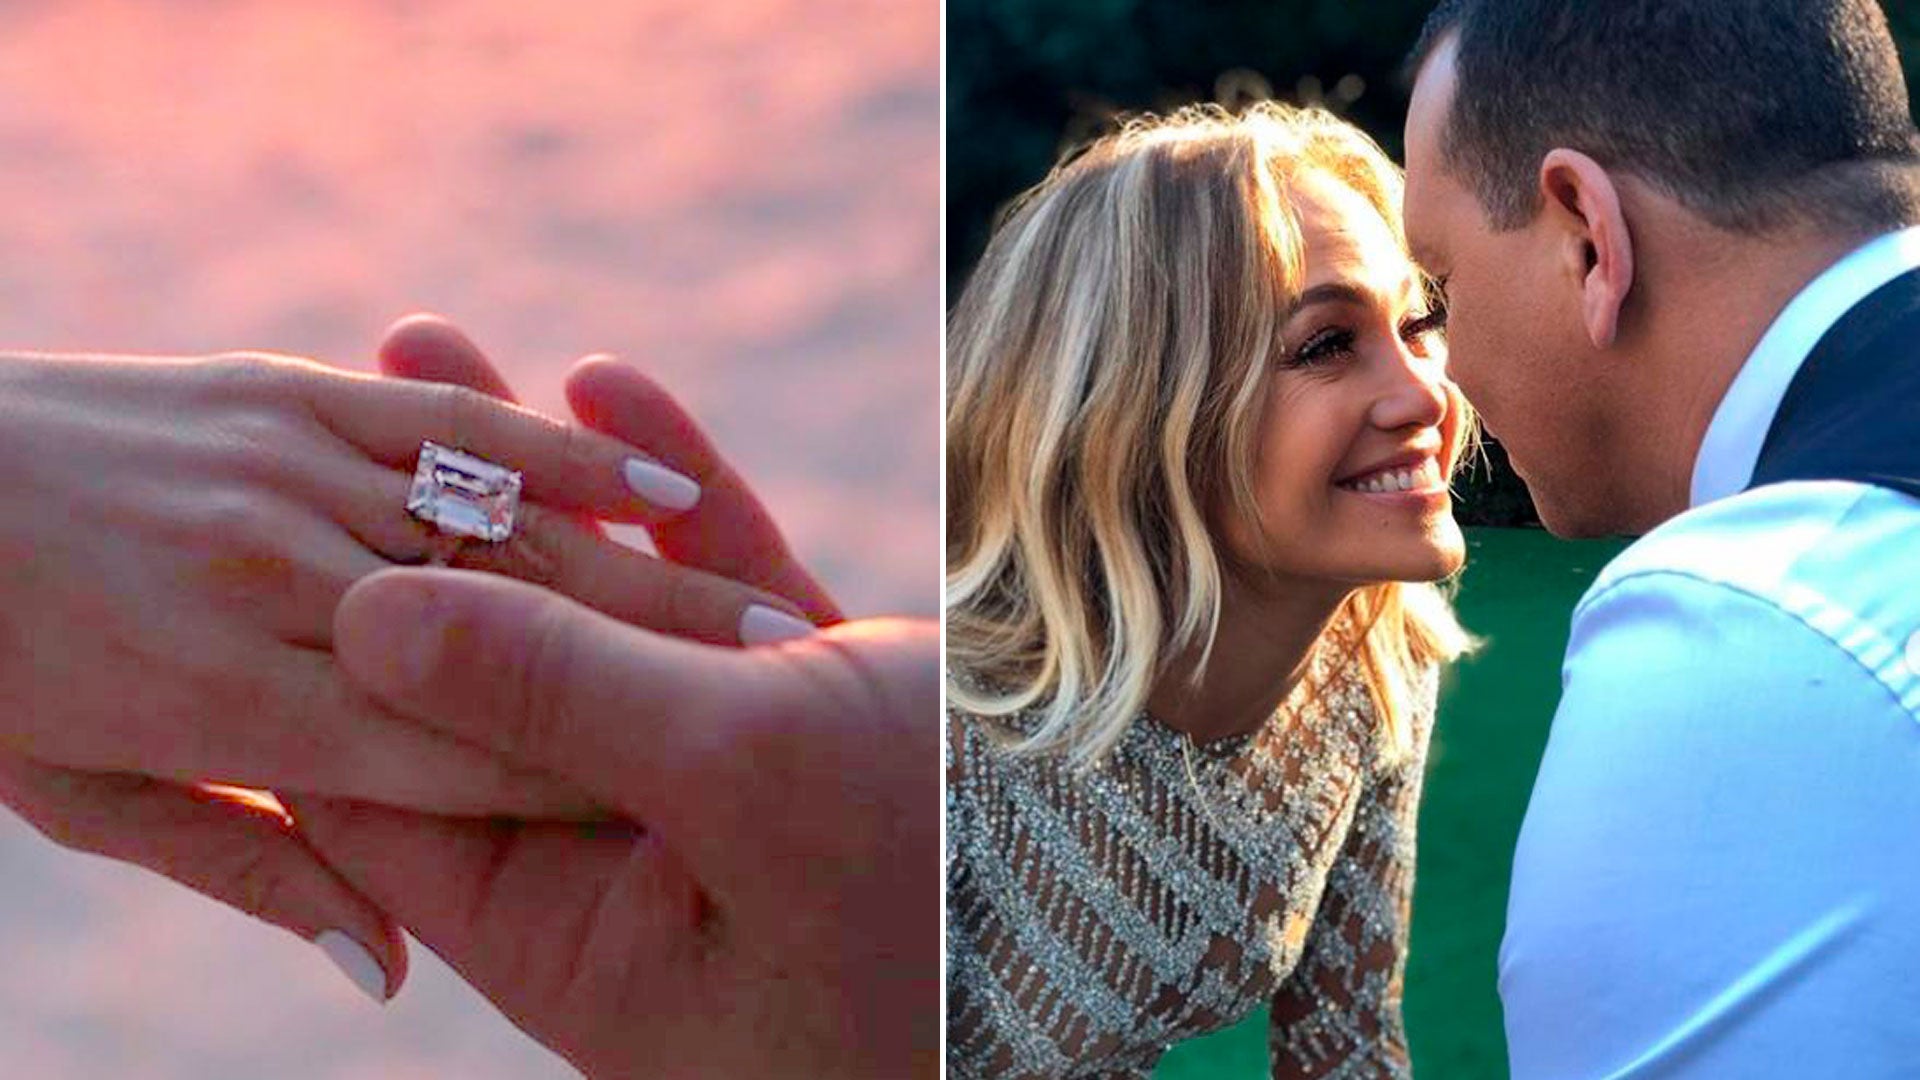 El deportista le propuso matrimonio con un anillo de un millón de dólares.